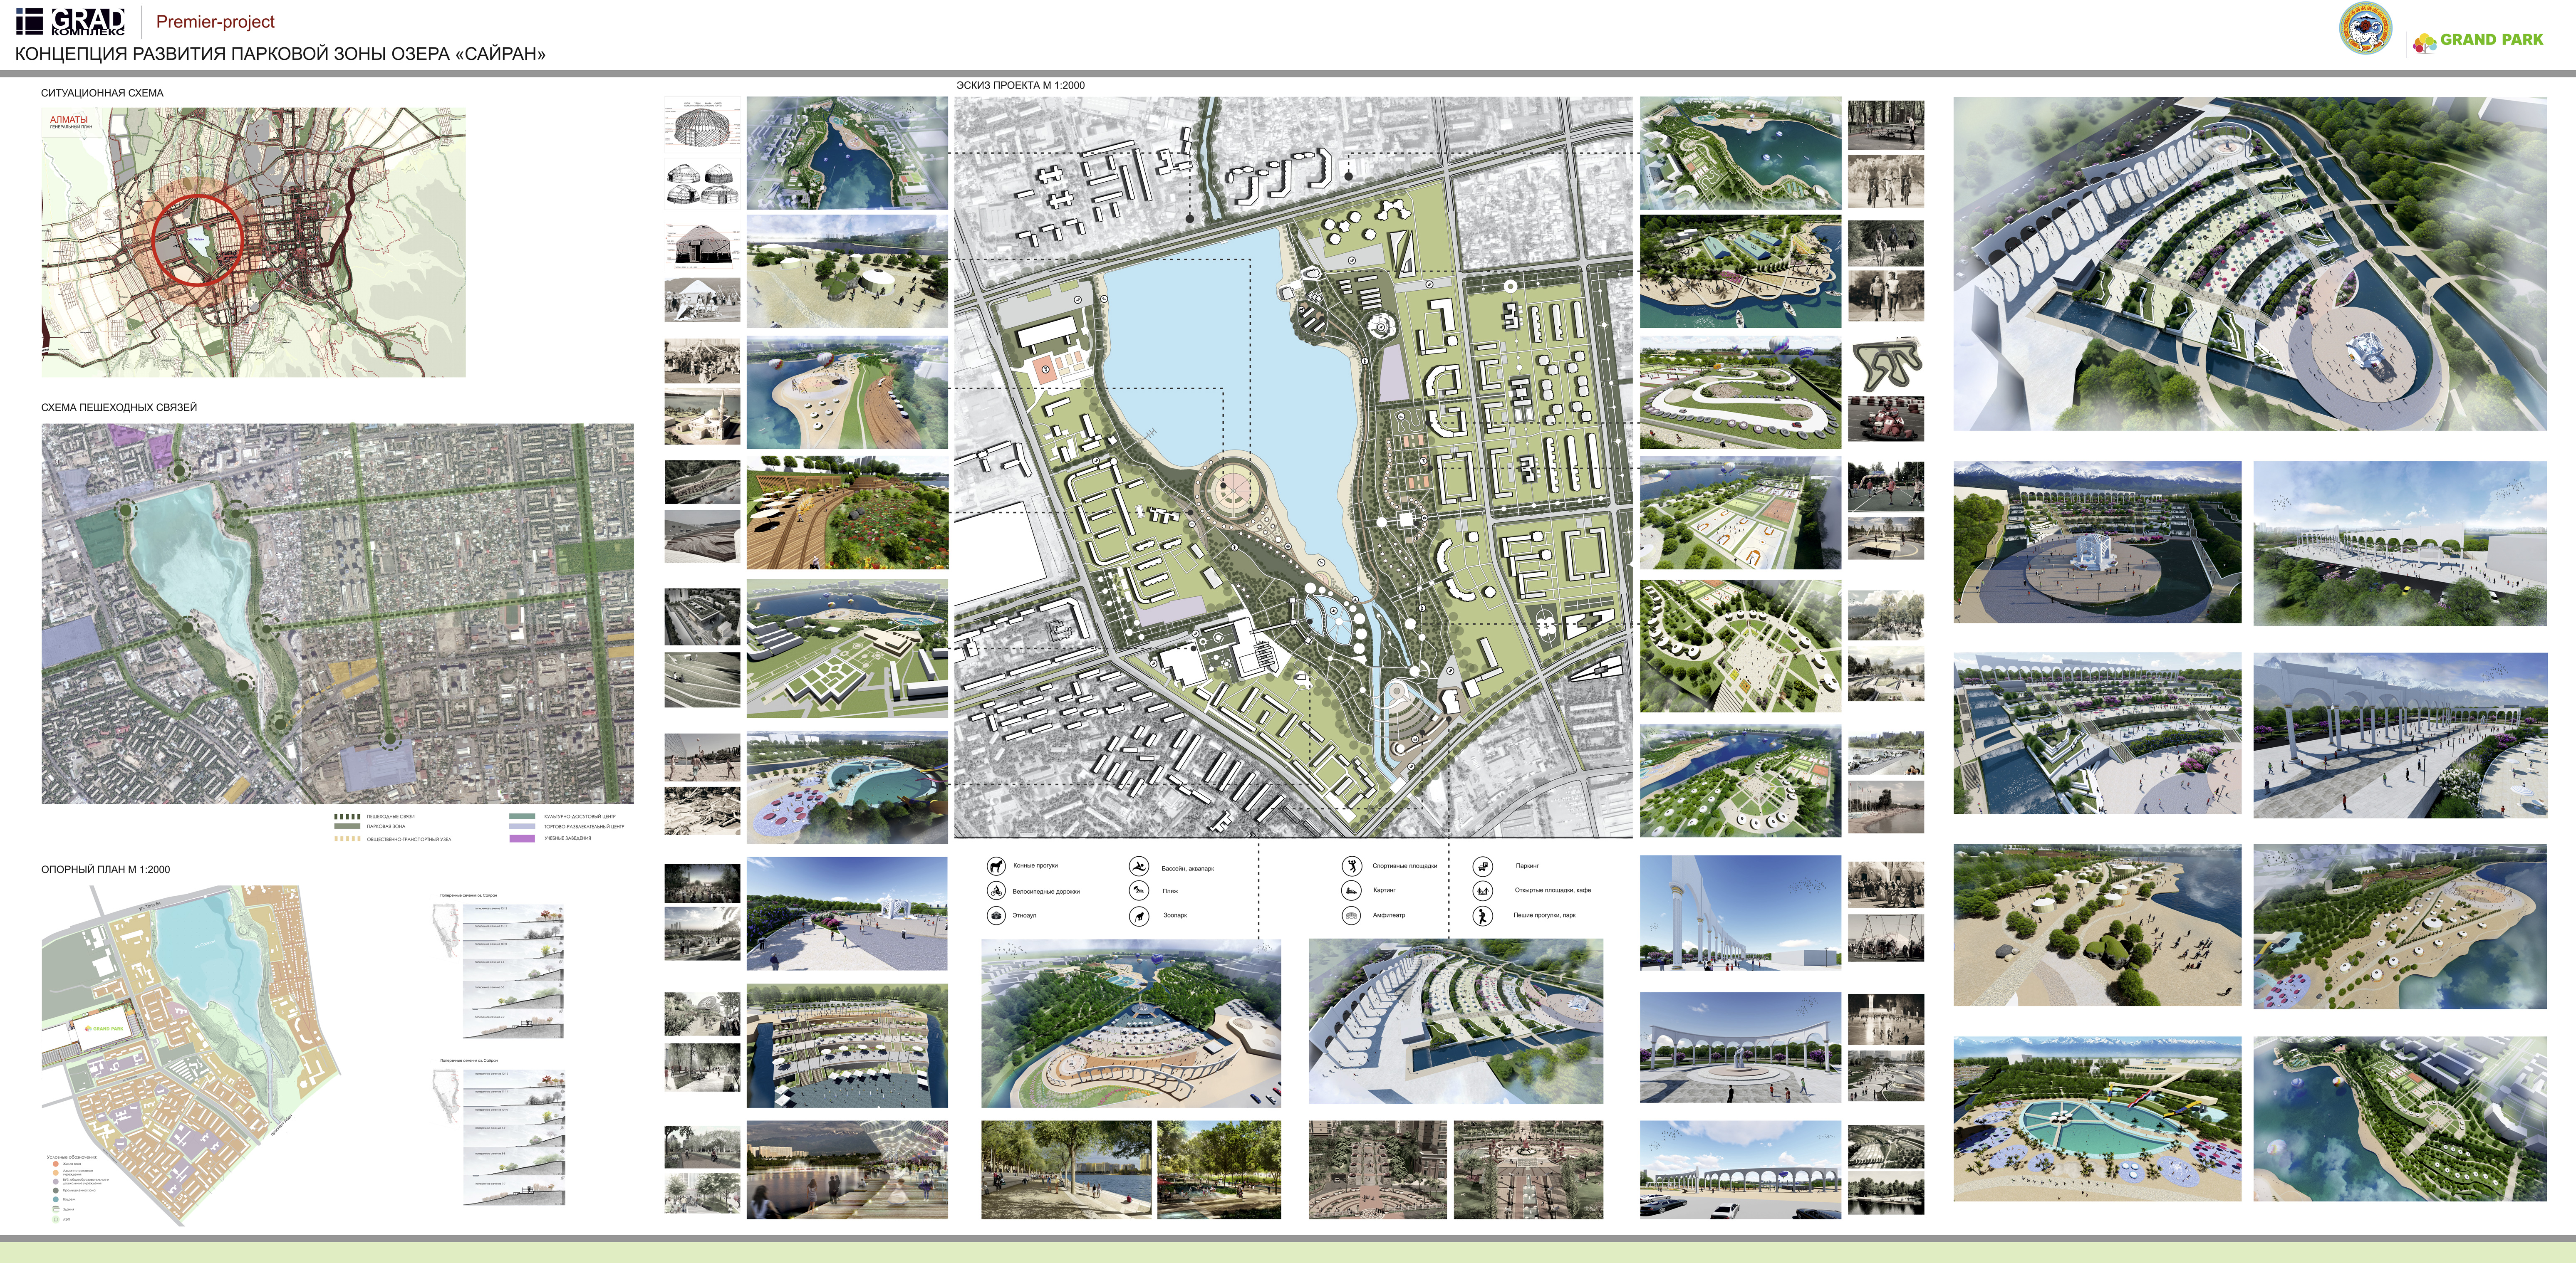 Концепция развития парковой зоны озера "Сайран"